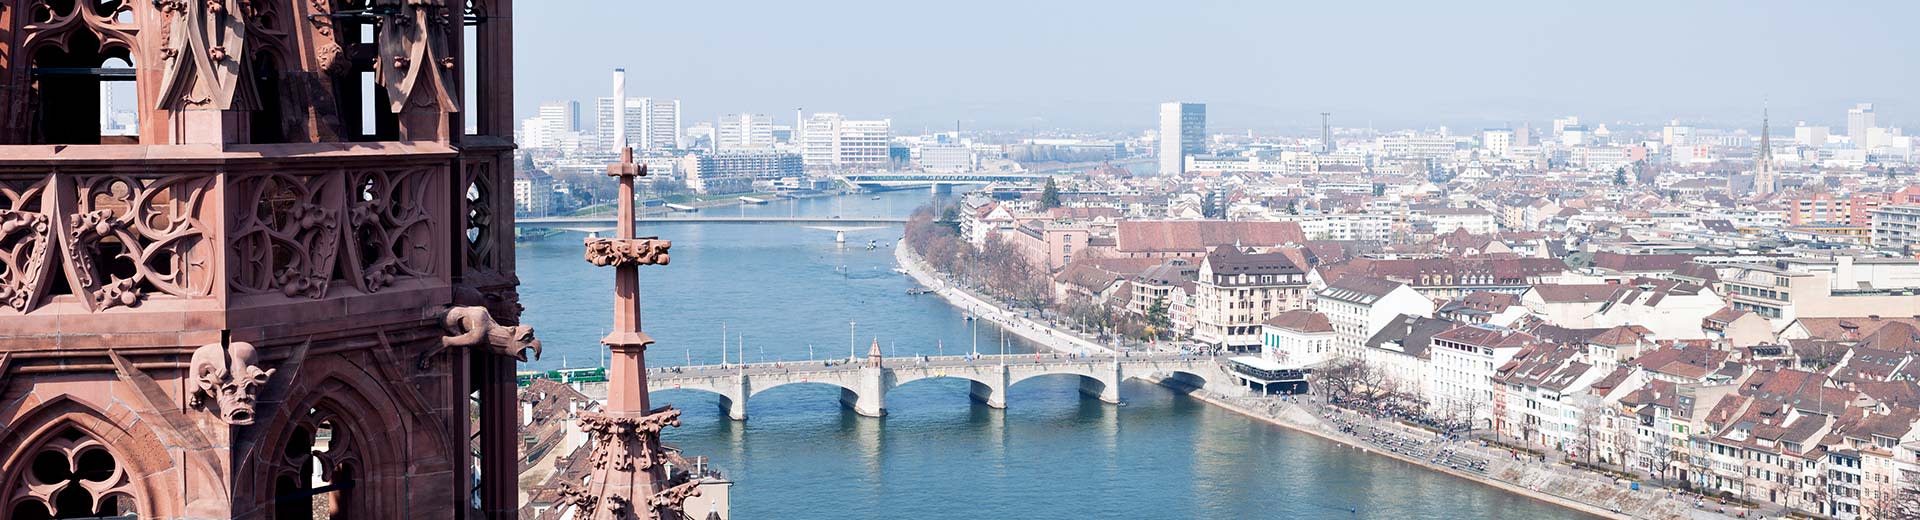 Vista de los ojos del río Rheine en Basilea en un día soleado, con una torre parcialmente a la vista a la izquierda y tres puentes que cruzan el río.